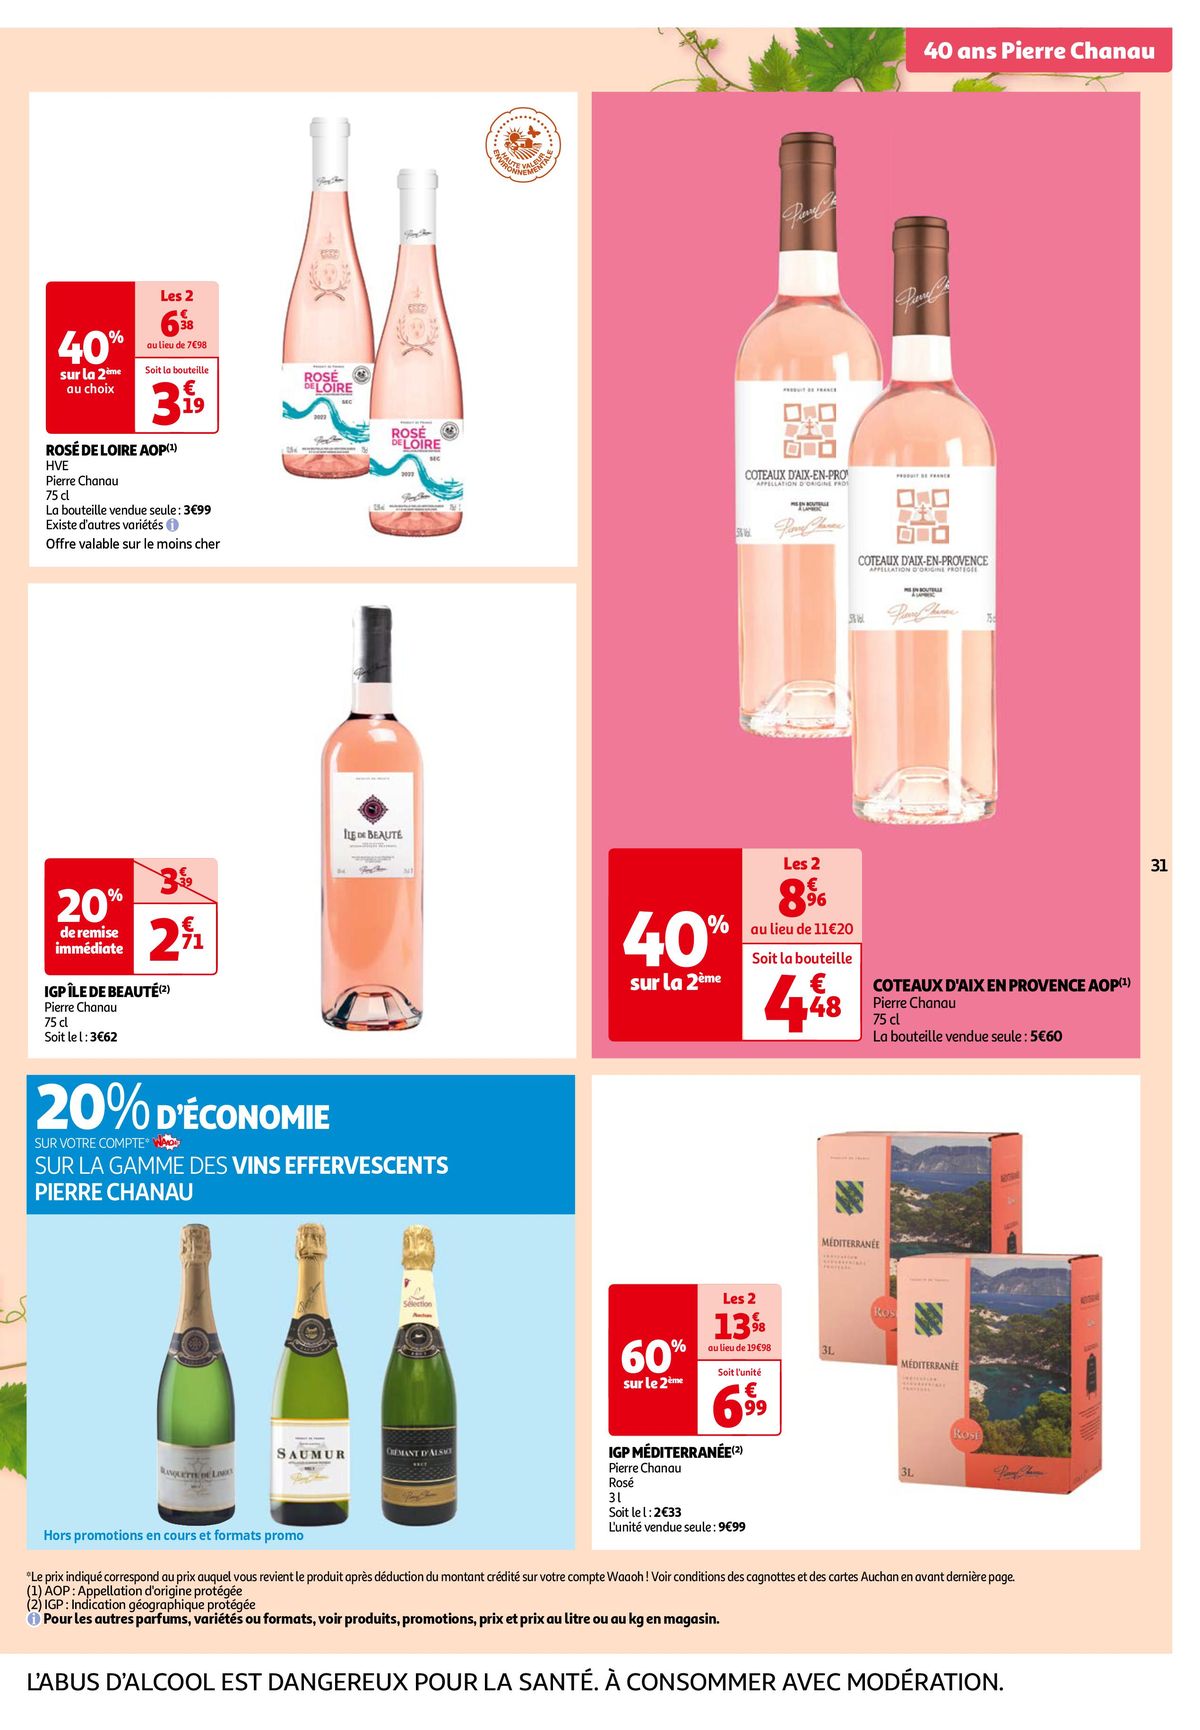 Catalogue Les 7 jours Auchan, c'est maintenant !, page 00031